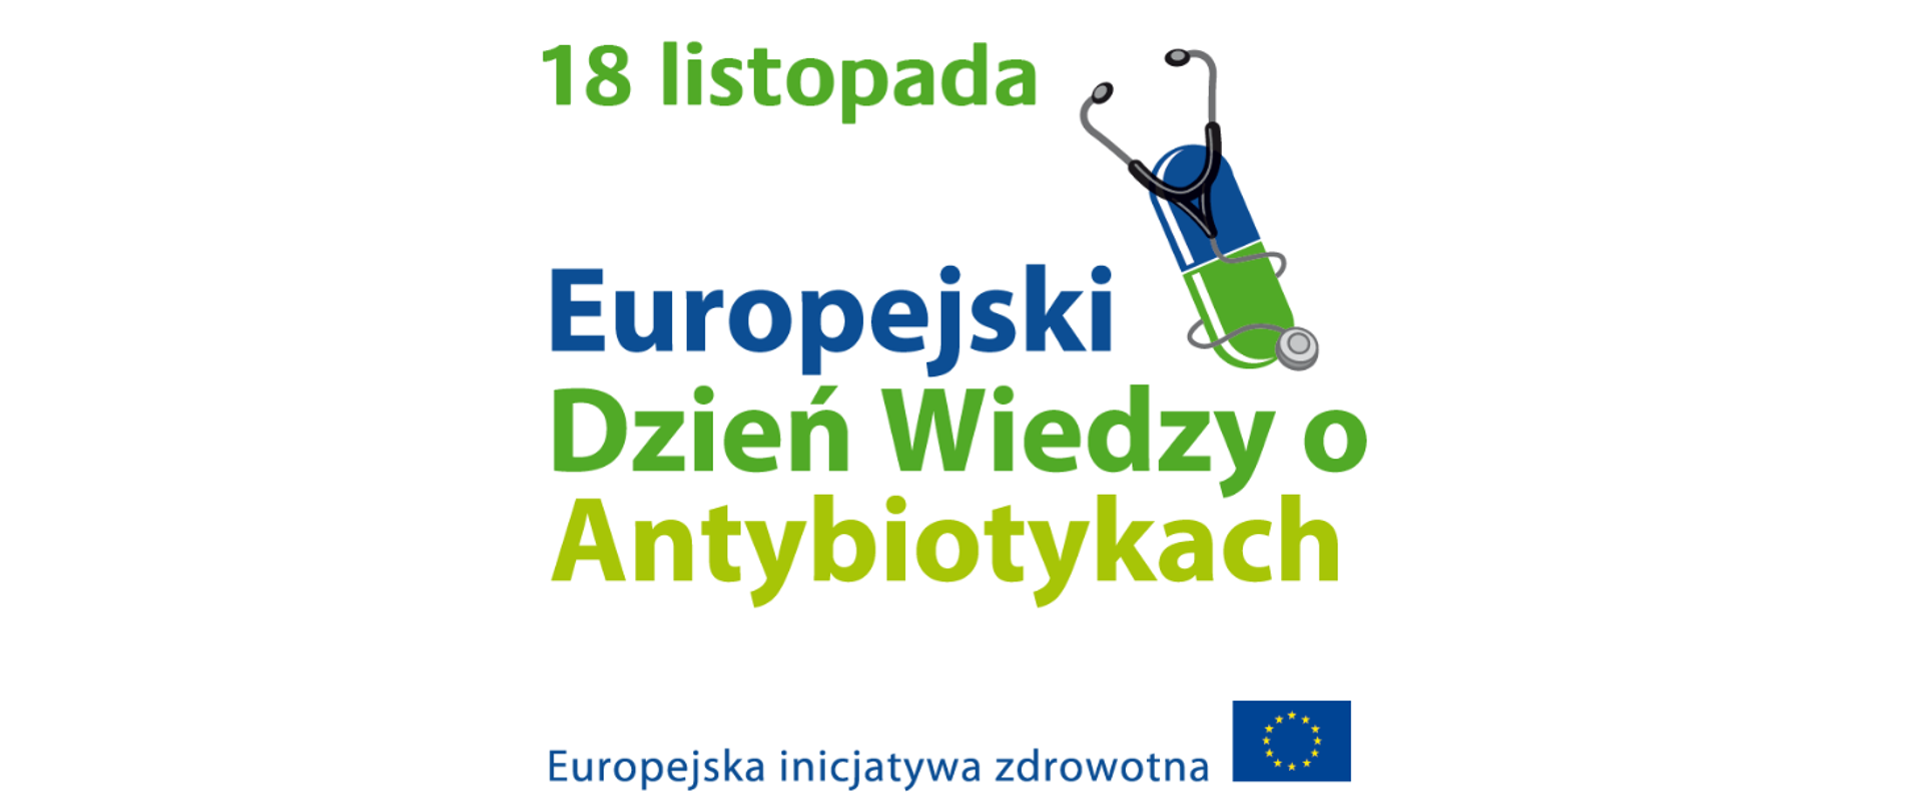 W centralnej części na białym tle widnieje napis 18 listopada Europejski Dzień Wiedzy o Antybiotykach obok zamieszczono grafikę przedstawiającą tabletkę i stetoskop. Pod tym umieszczono napis Europejska inicjatywa zdrowotna i logo Unii Europejskiej